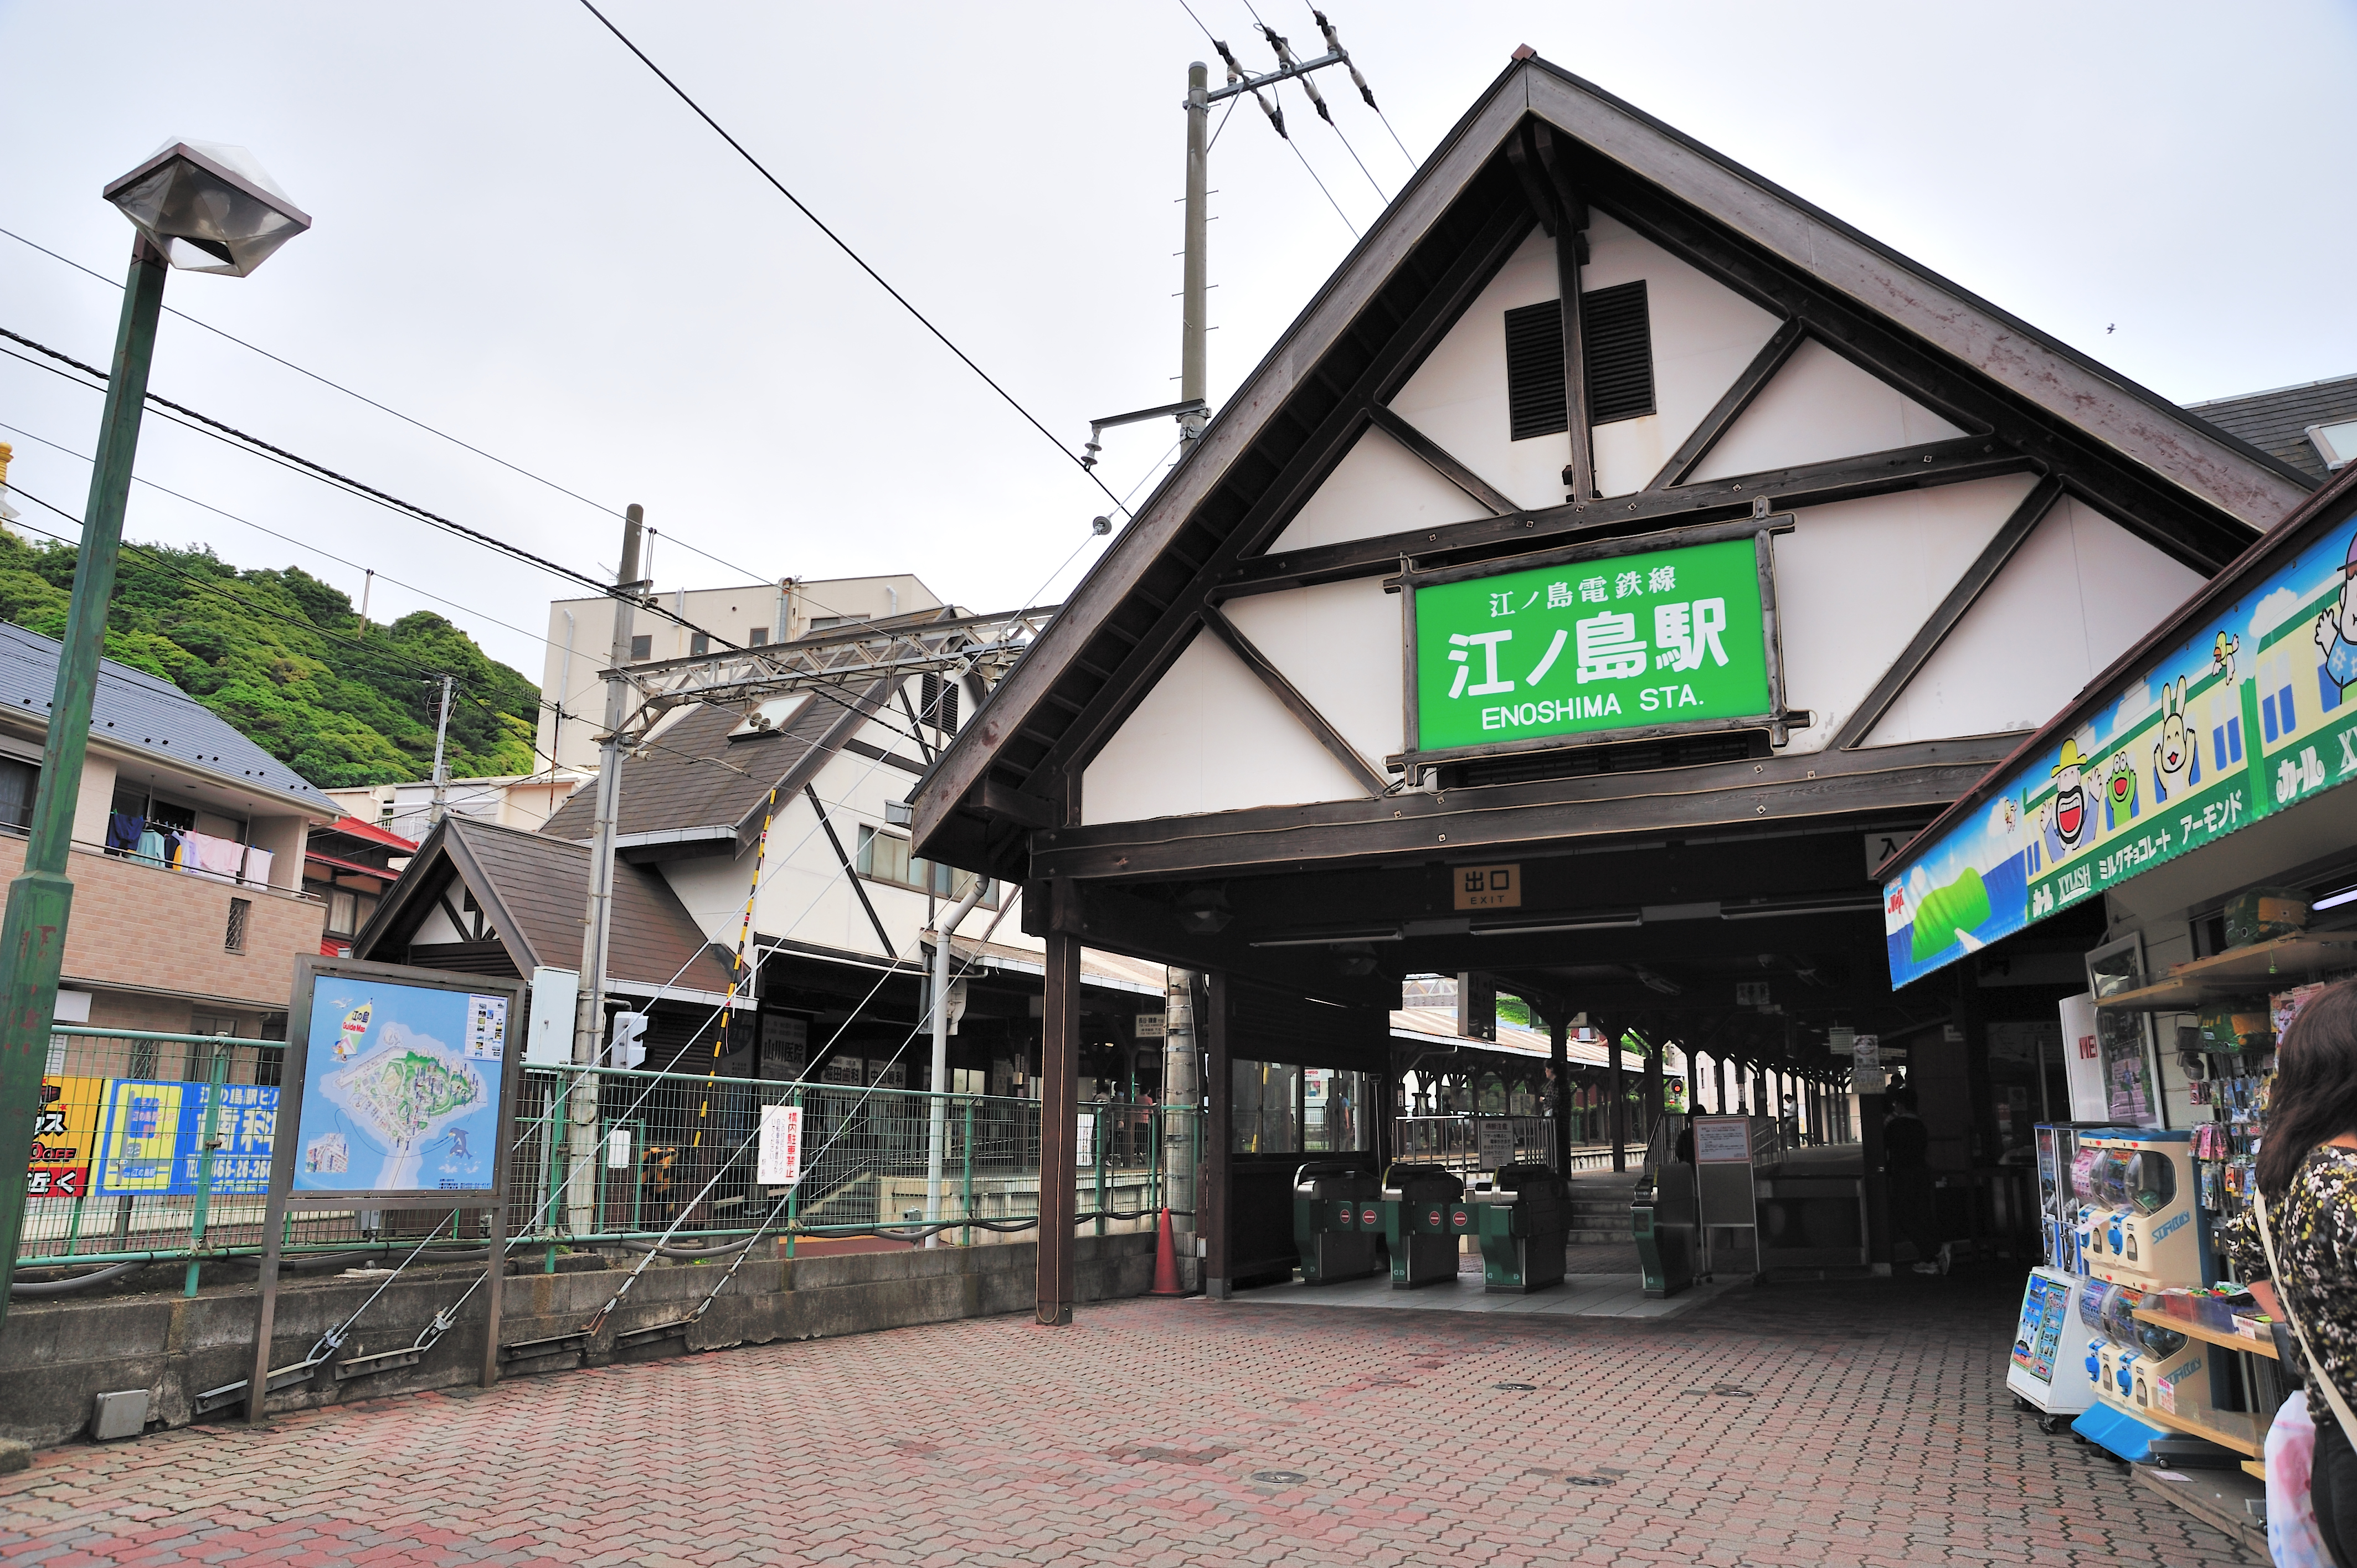 江之島車站